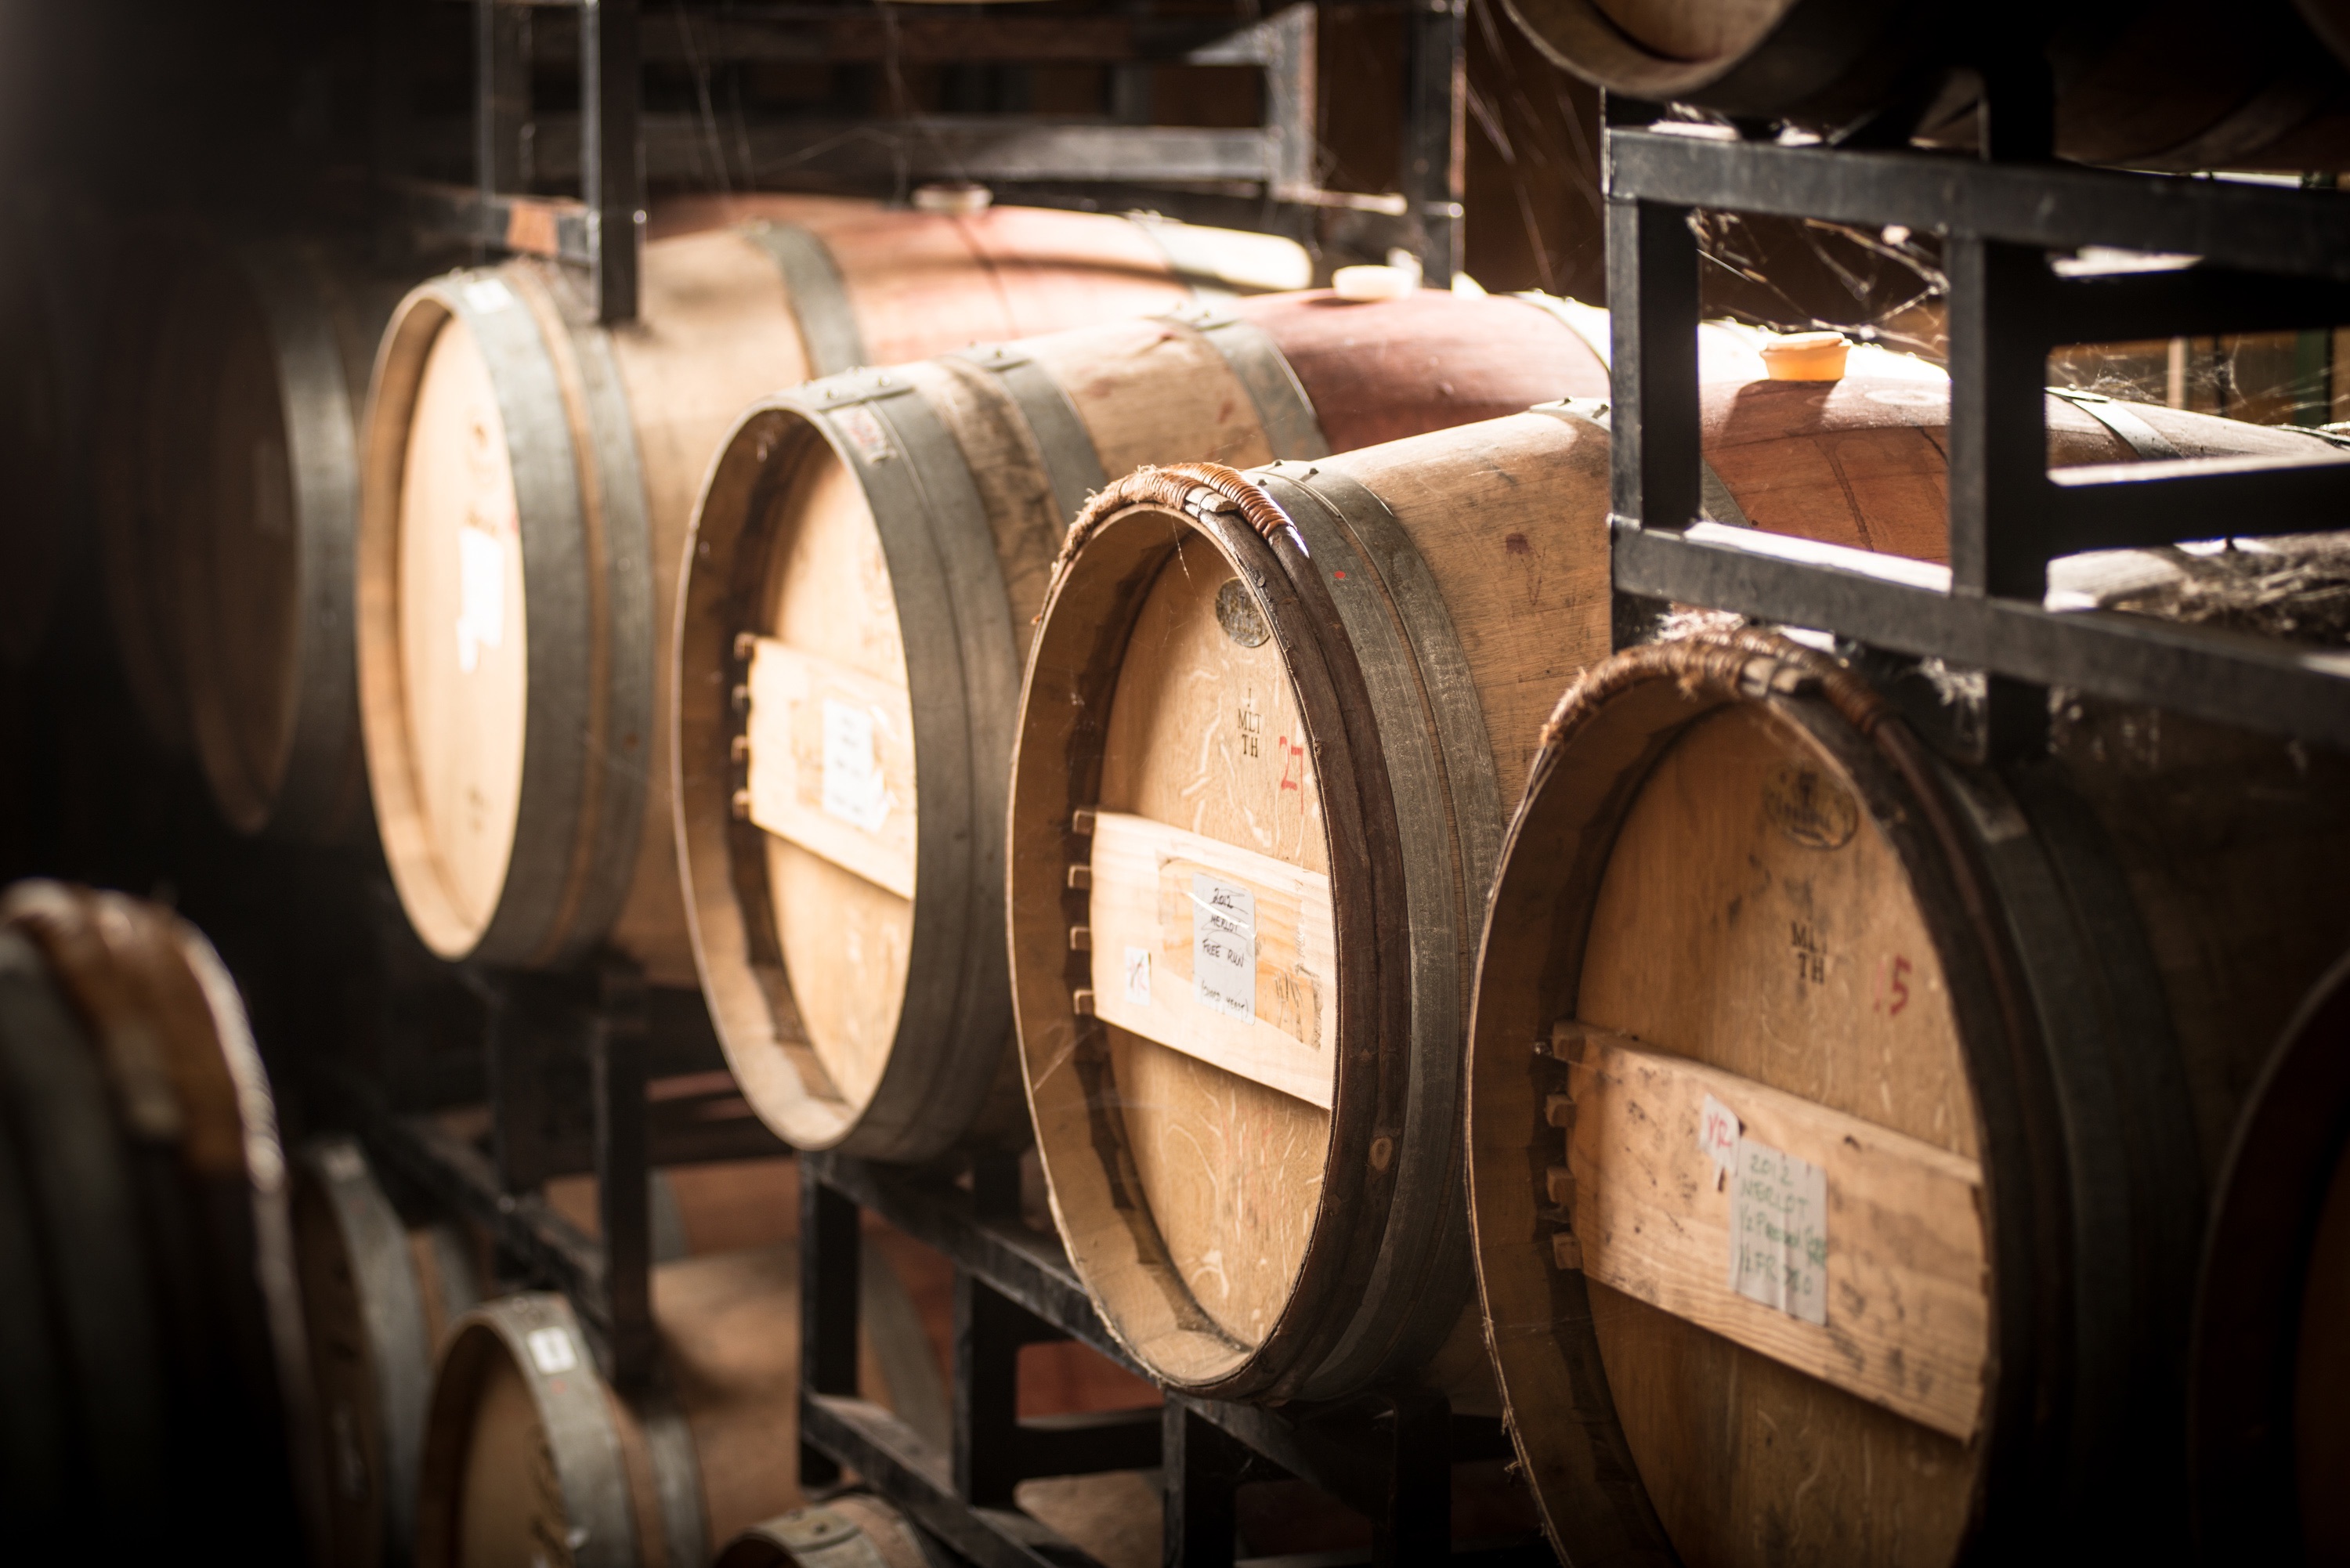 oak barrel-aged wines from BLackwood Lane Winery